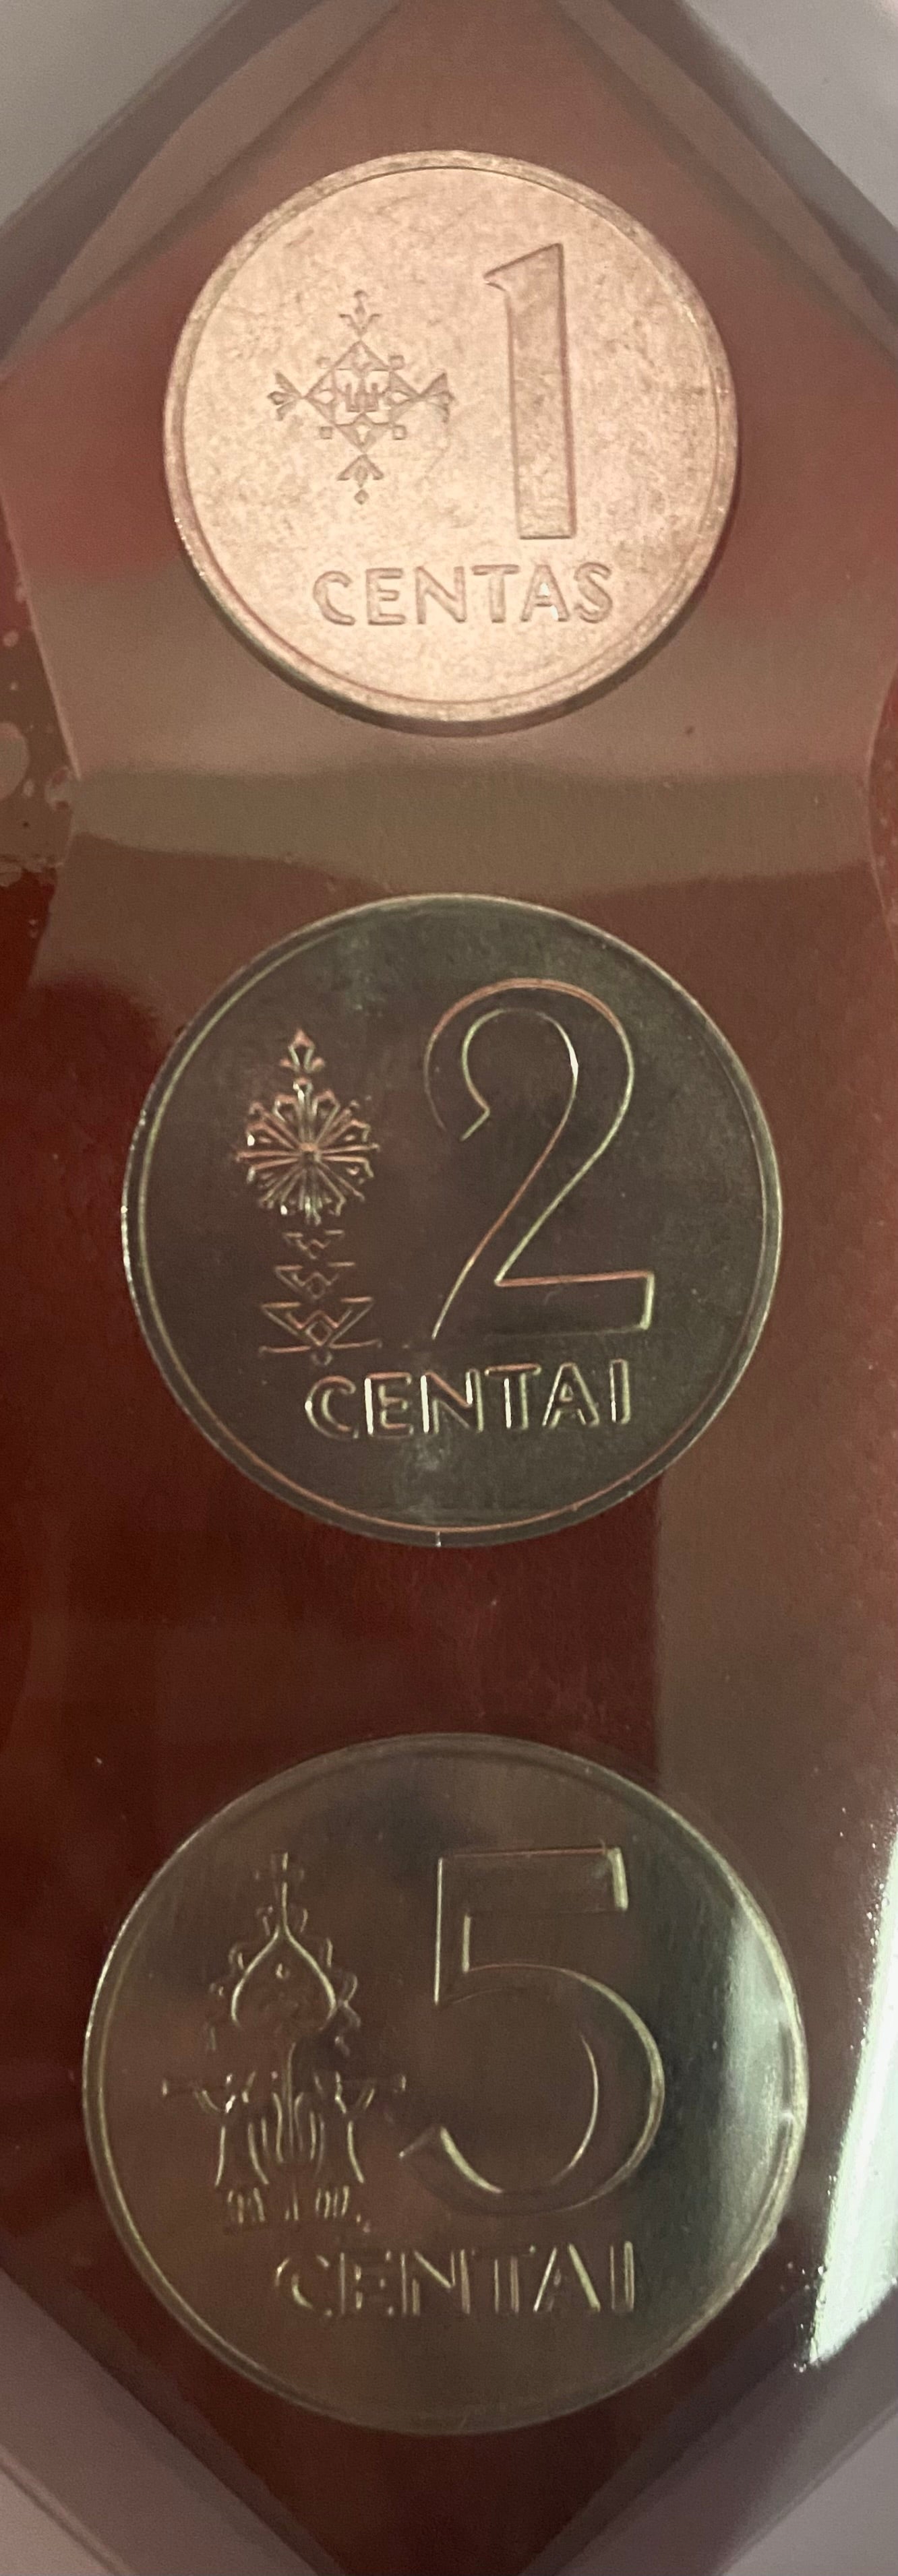 1991 - 1 Centas, 2 Centai, and 5 Centai Lithuanian Coins